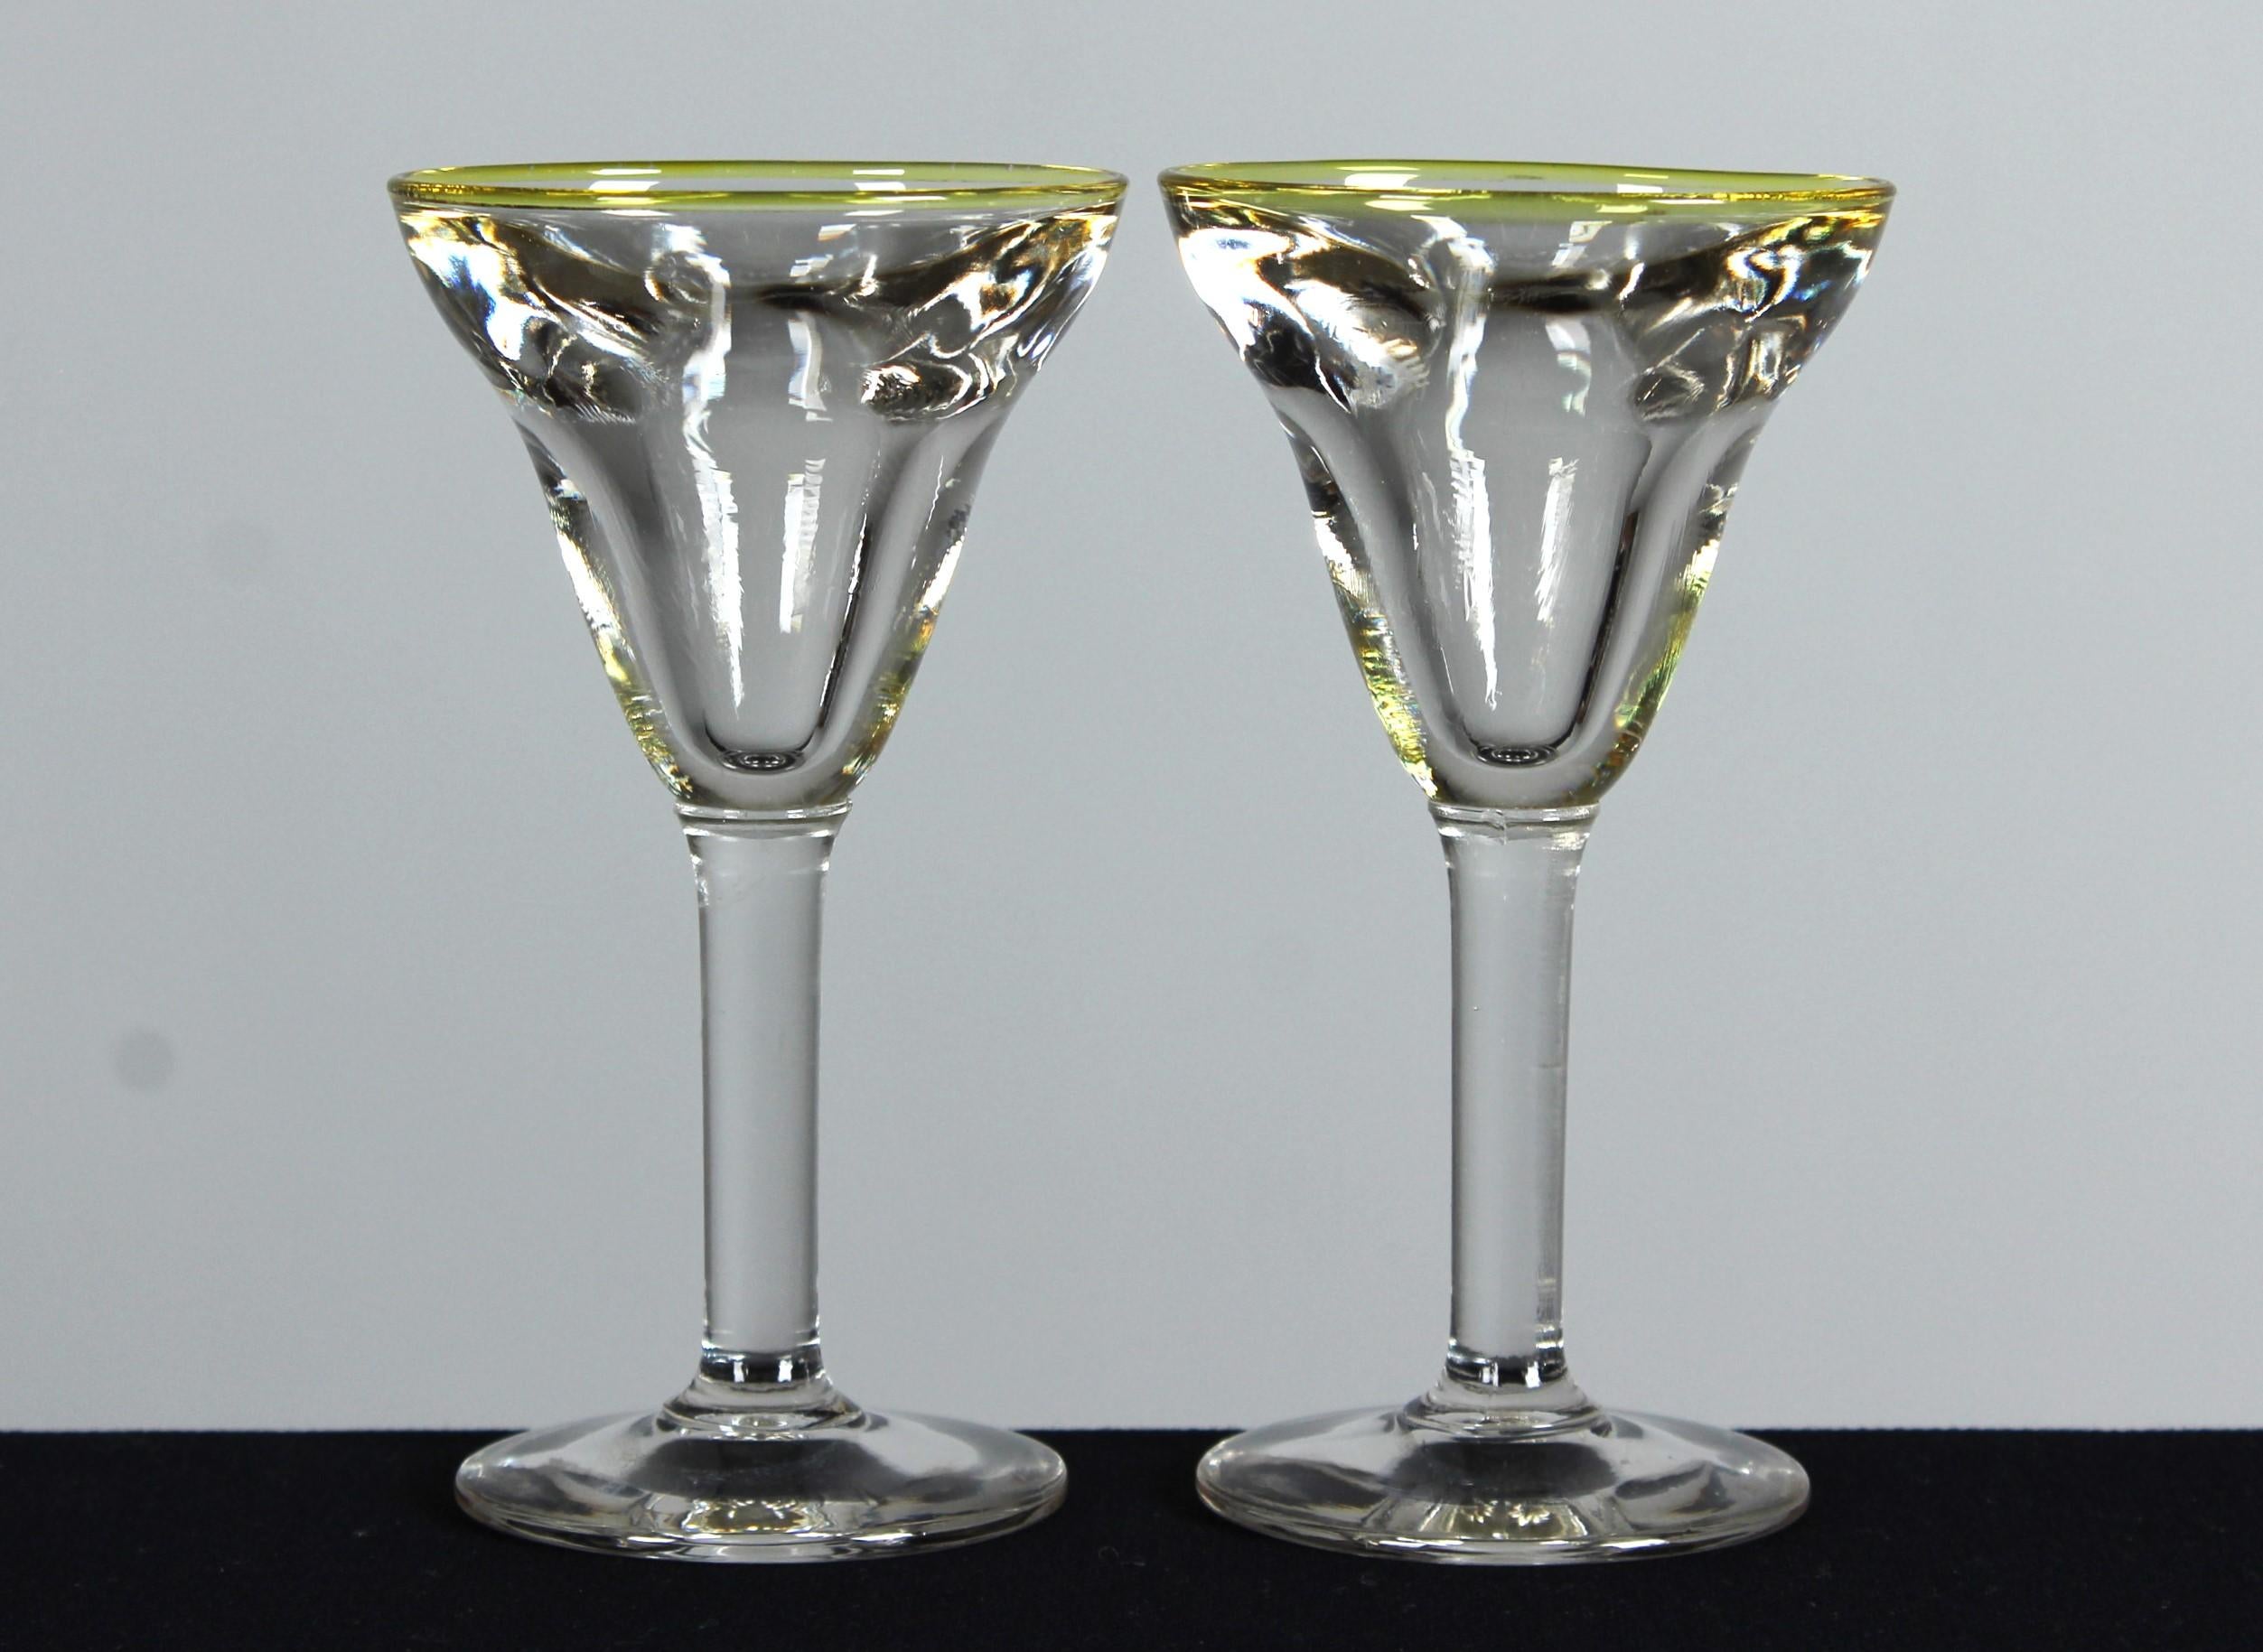 Ein schönes Set aus zwei antiken Weingläsern, Frankreich, um 1900.

Im Frankreich des 19. Jahrhunderts erlebte die Glasmacherkunst eine Renaissance, inspiriert durch die reiche Geschichte und das Erbe der alten Techniken. Antike Gläser aus dieser